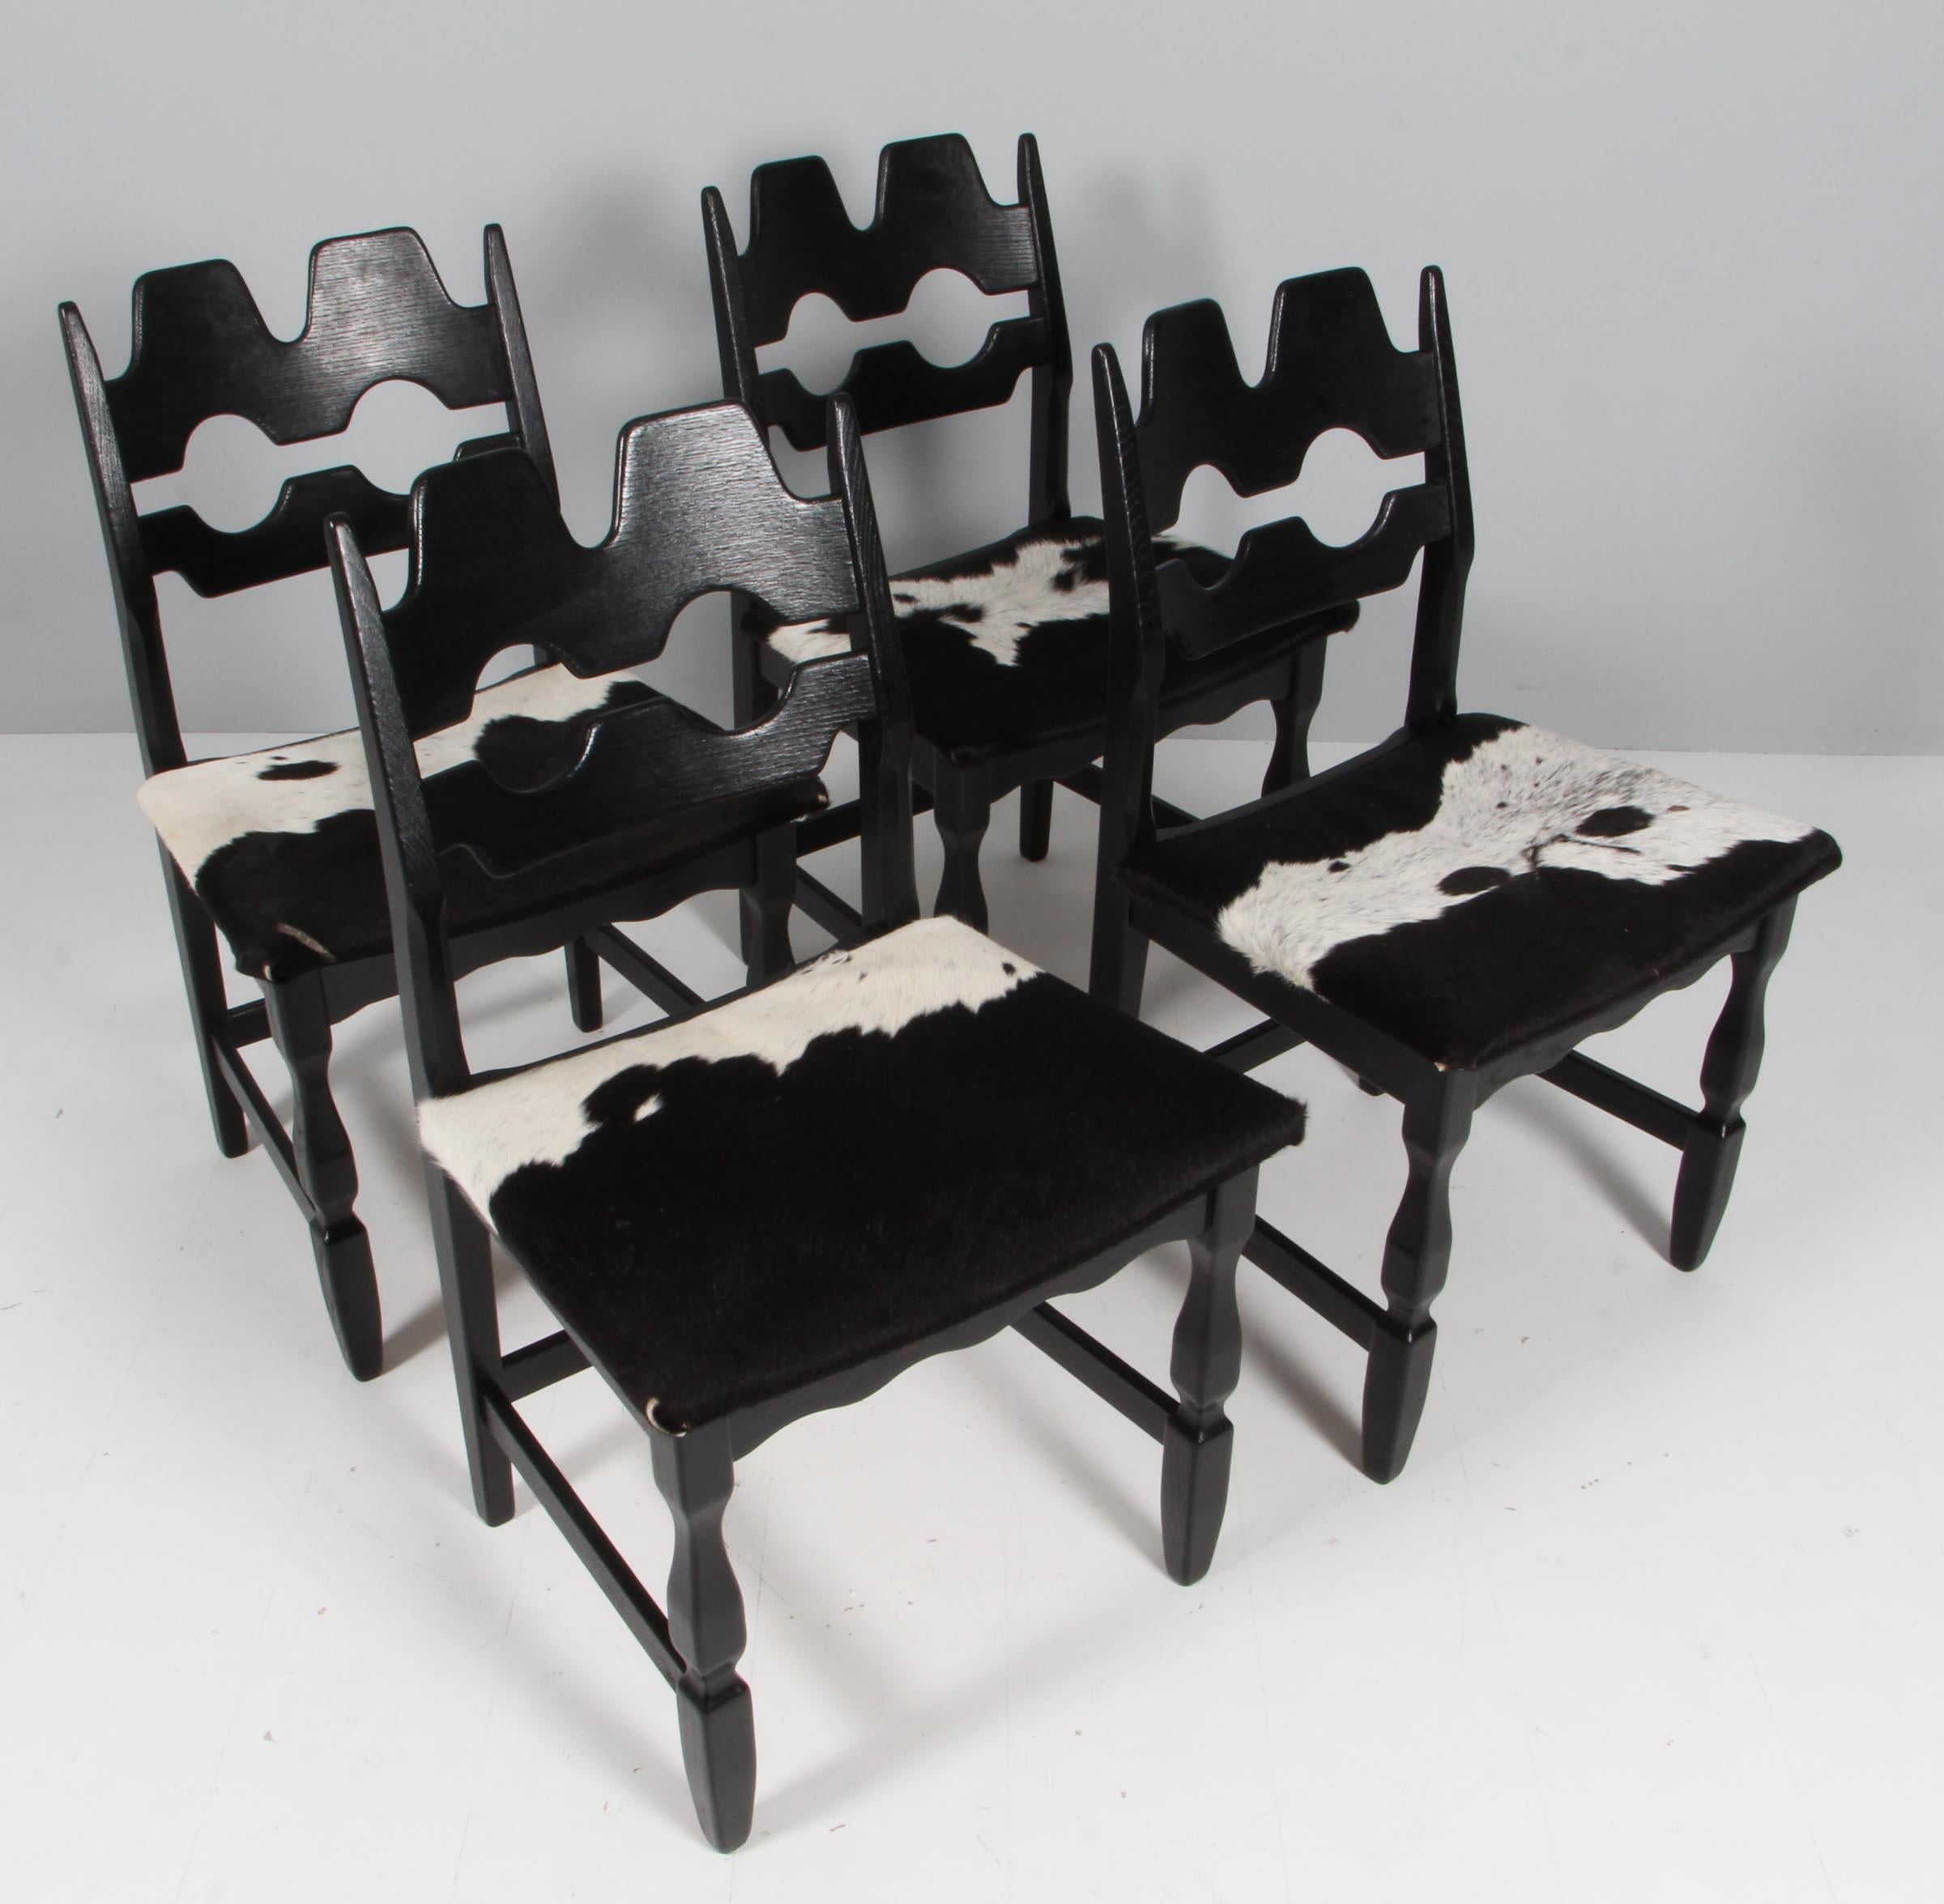 Auffällige Esszimmerstühle von Henning Kjærnulf, hergestellt aus  schwarz lackierte Eiche und Sitz aus Rindsleder. Dies war die beliebteste Option, als die Stühle hergestellt wurden.

Erfrischendes Design mit kühnem Barock, das sich gut mit dem